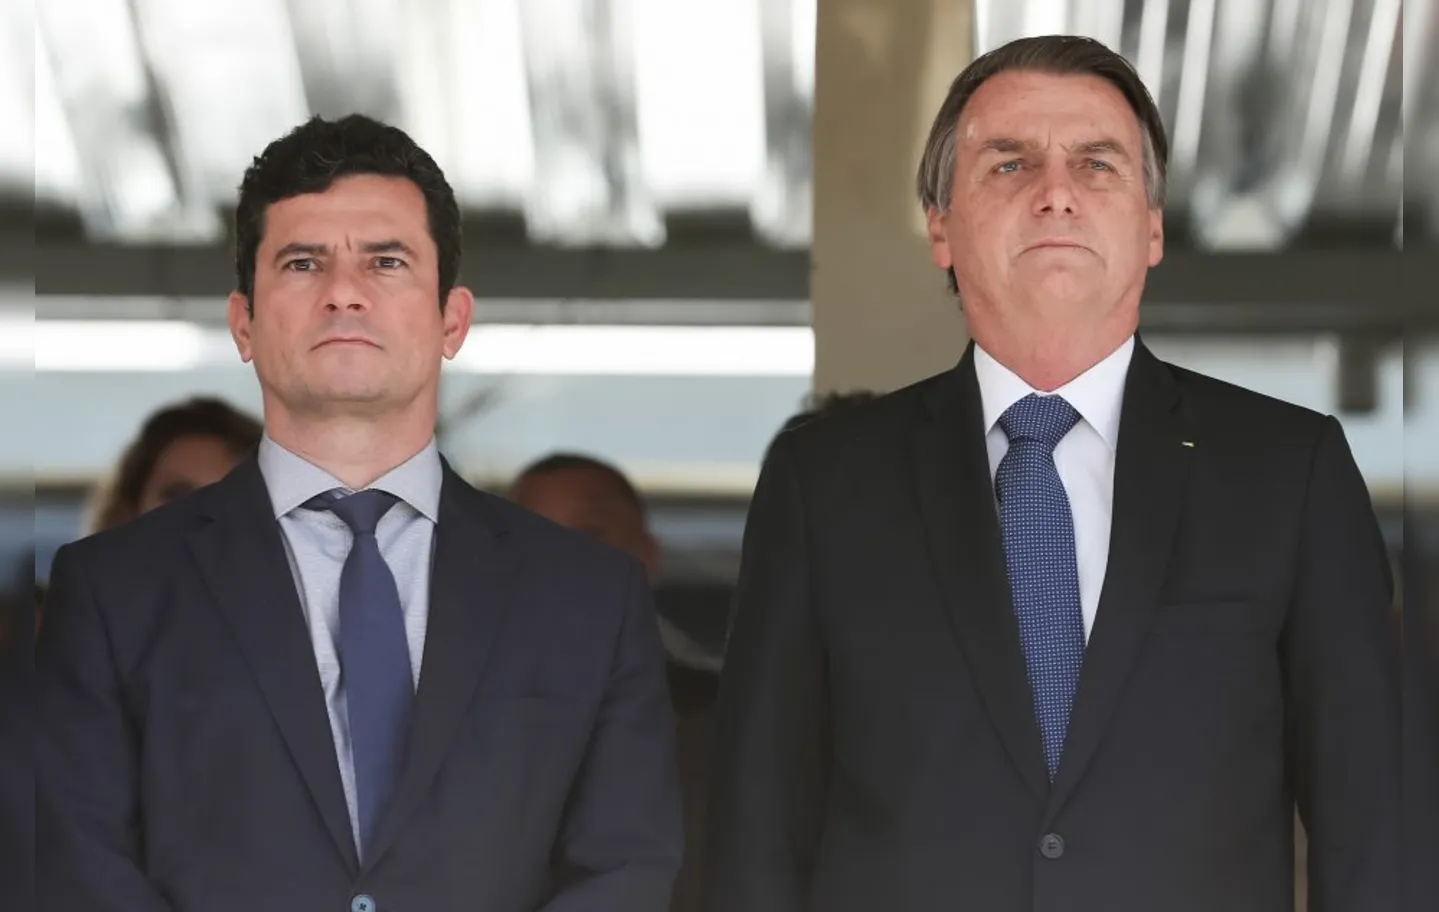 Inquérito é sobre a interferência política que Bolsonaro teria feito na Polícia Federal | Foto: Arquivo | Agência Brasil